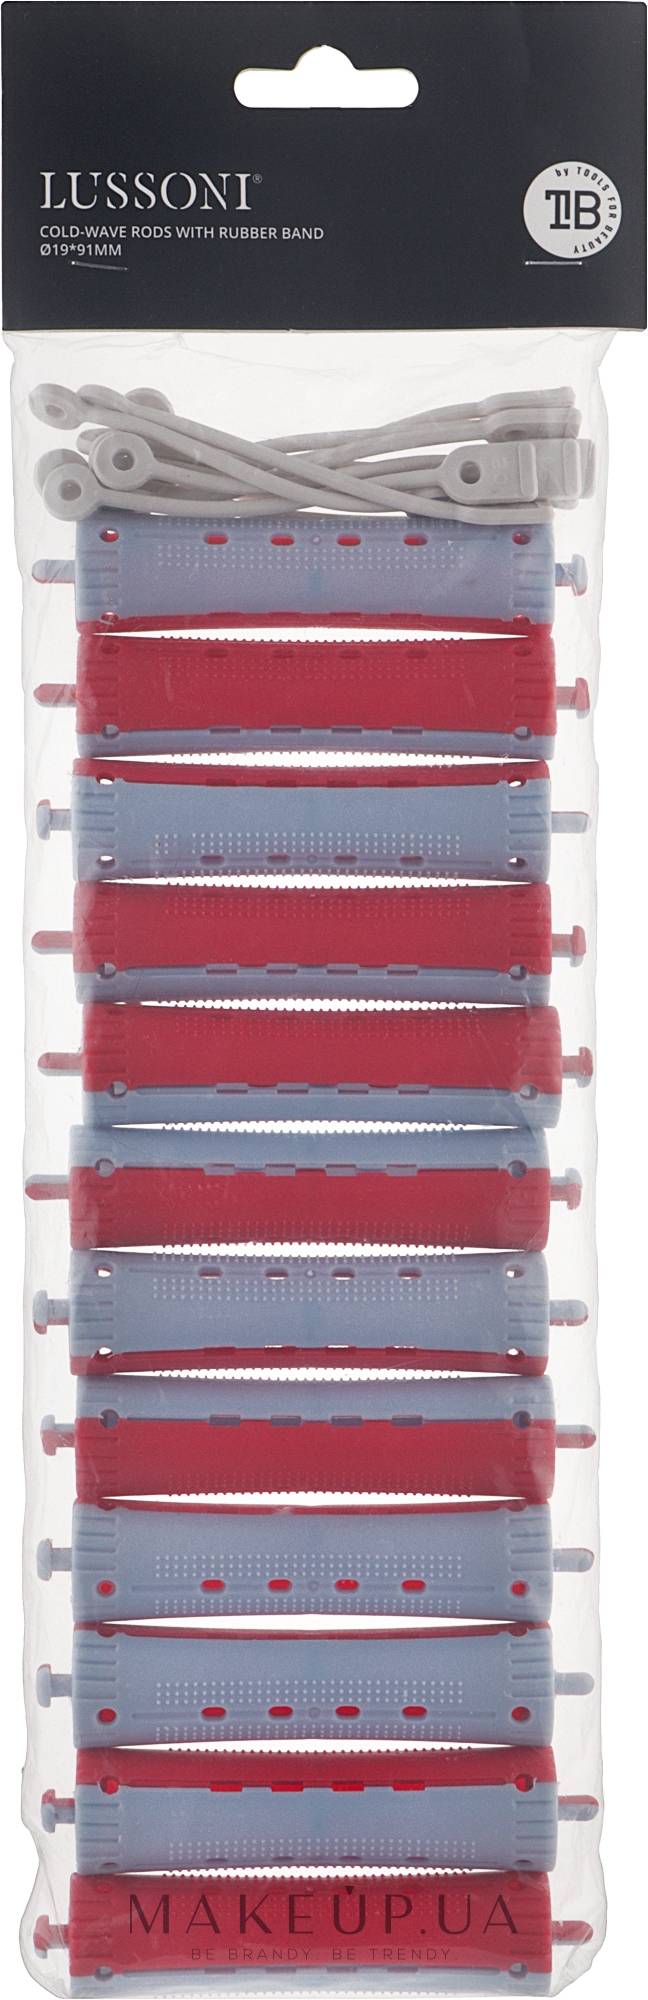 Бігуді для волосся O19x91 мм, червоно-блакитні - Lussoni Cold-Wave Rods With Rubber Band — фото 12шт